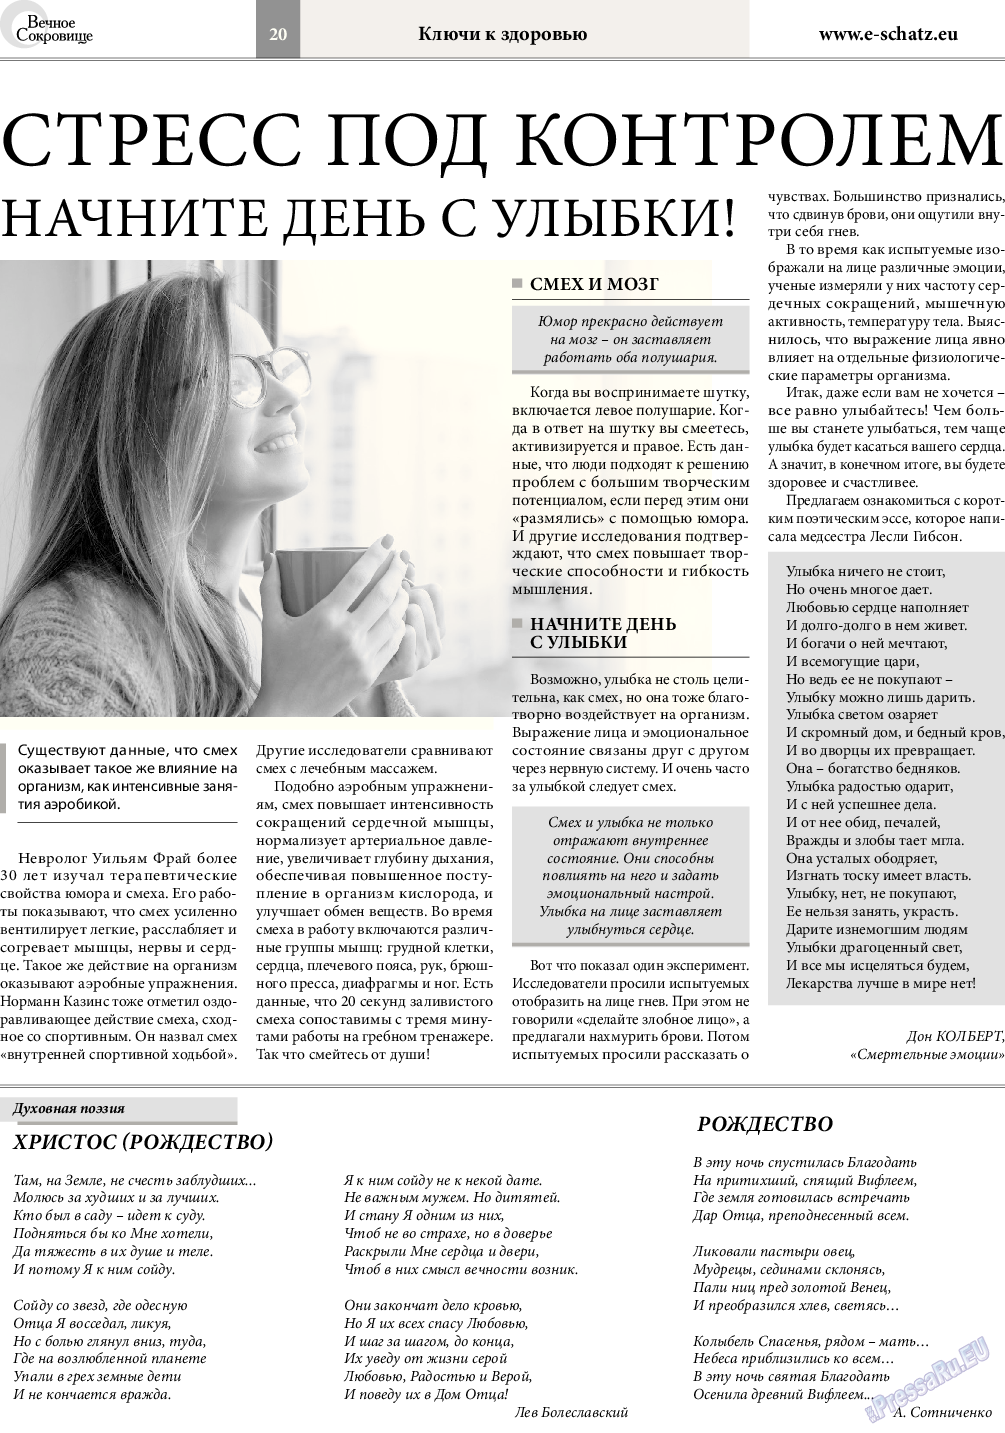 Вечное сокровище (газета). 2016 год, номер 6, стр. 20